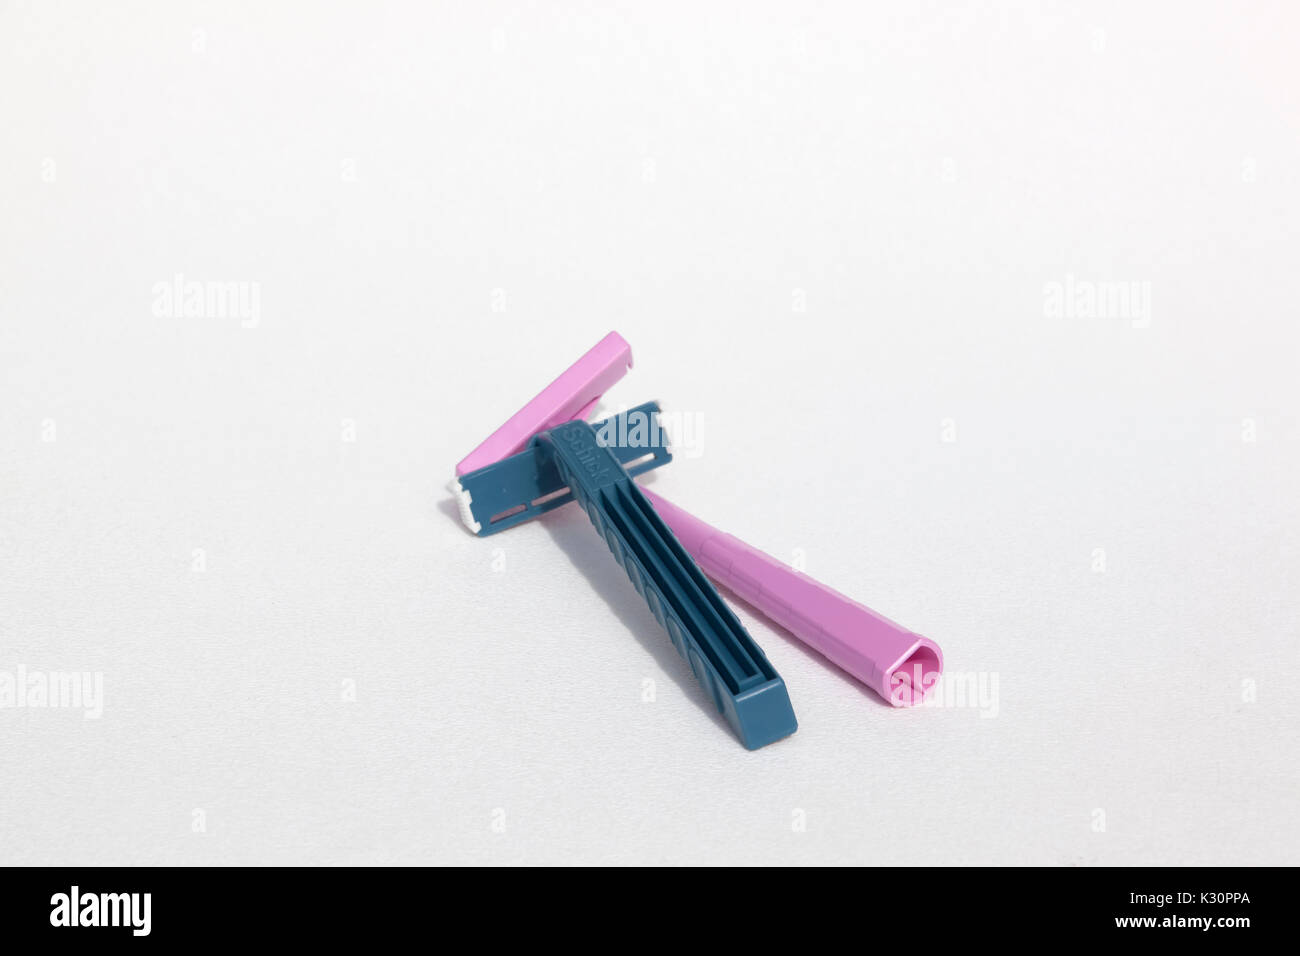 Un blu monouso Schick & rosa Bic rasoio usa e getta entrambi realizzati in materiale plastico polipropilene. Foto Stock